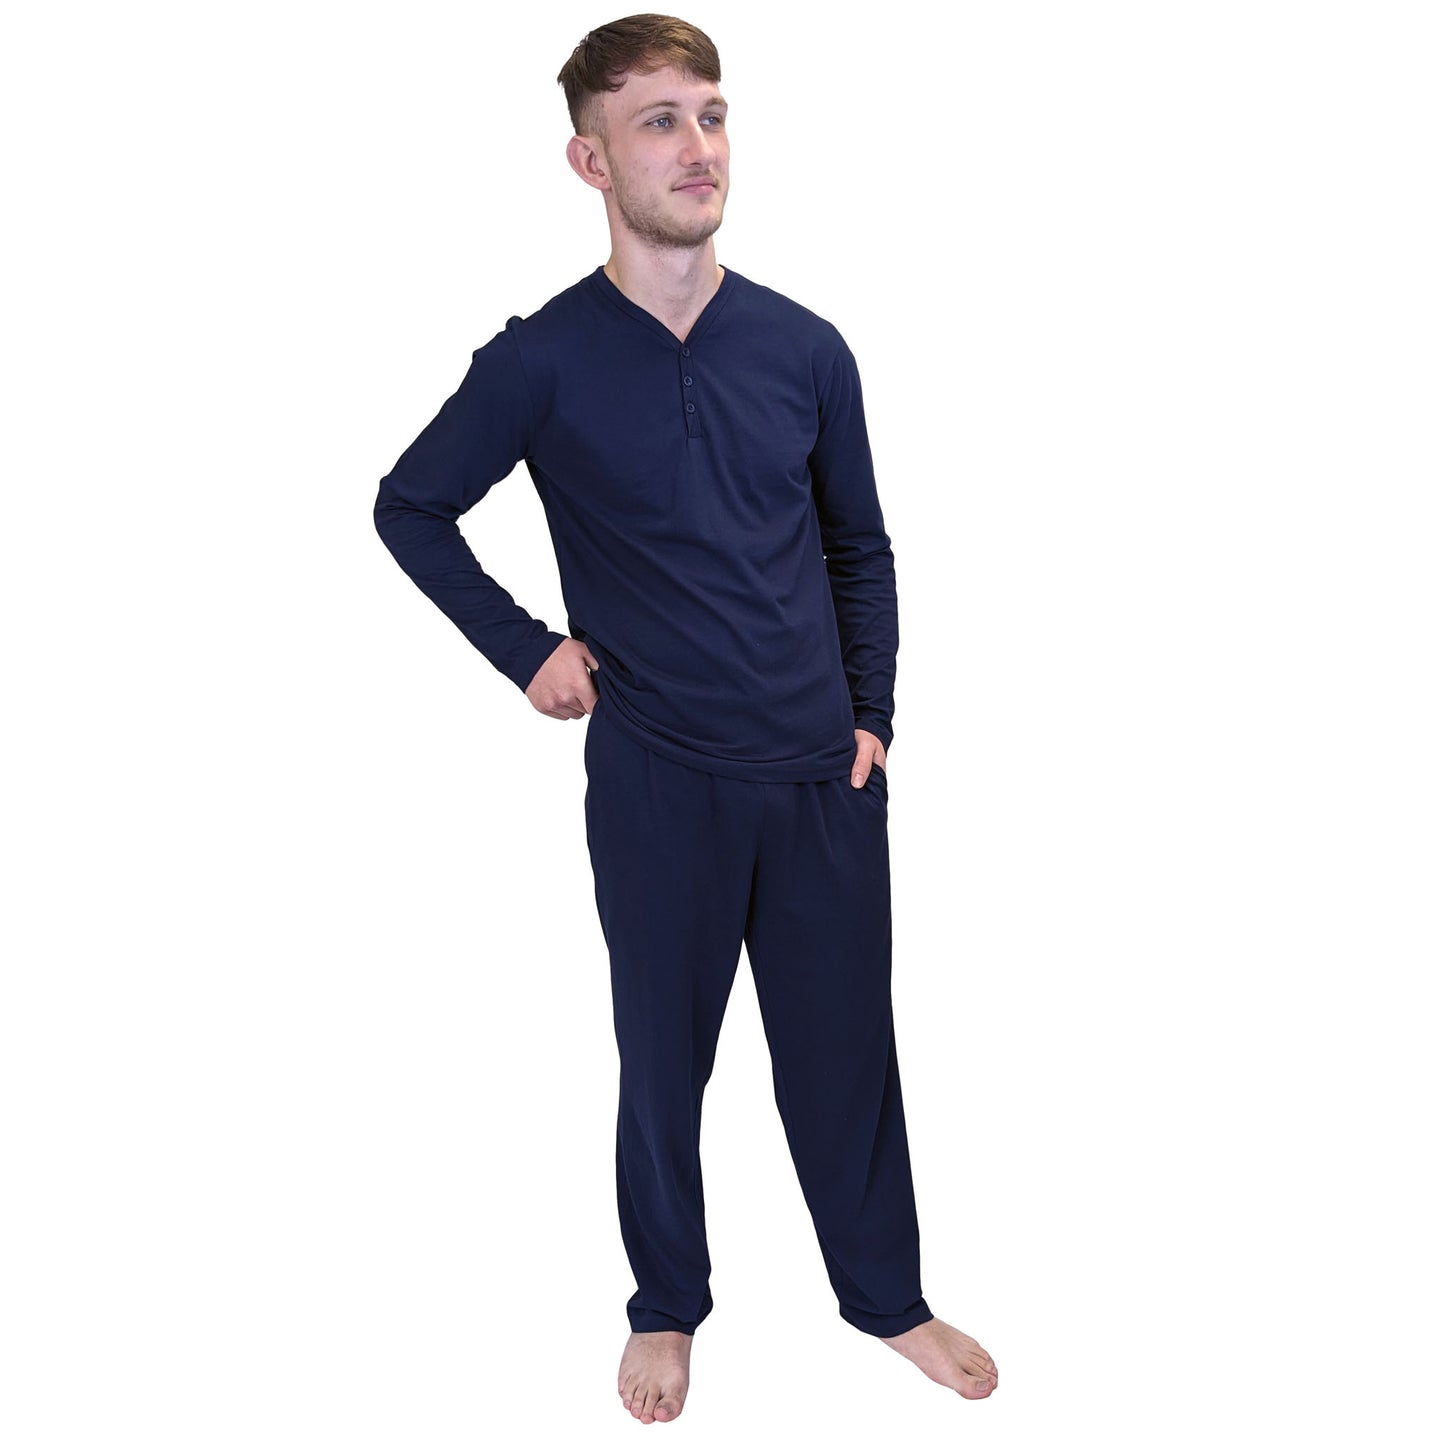 Dapper Mens Pyjamas/Loungewear Sets Sleepwear & Loungewear ASASonline